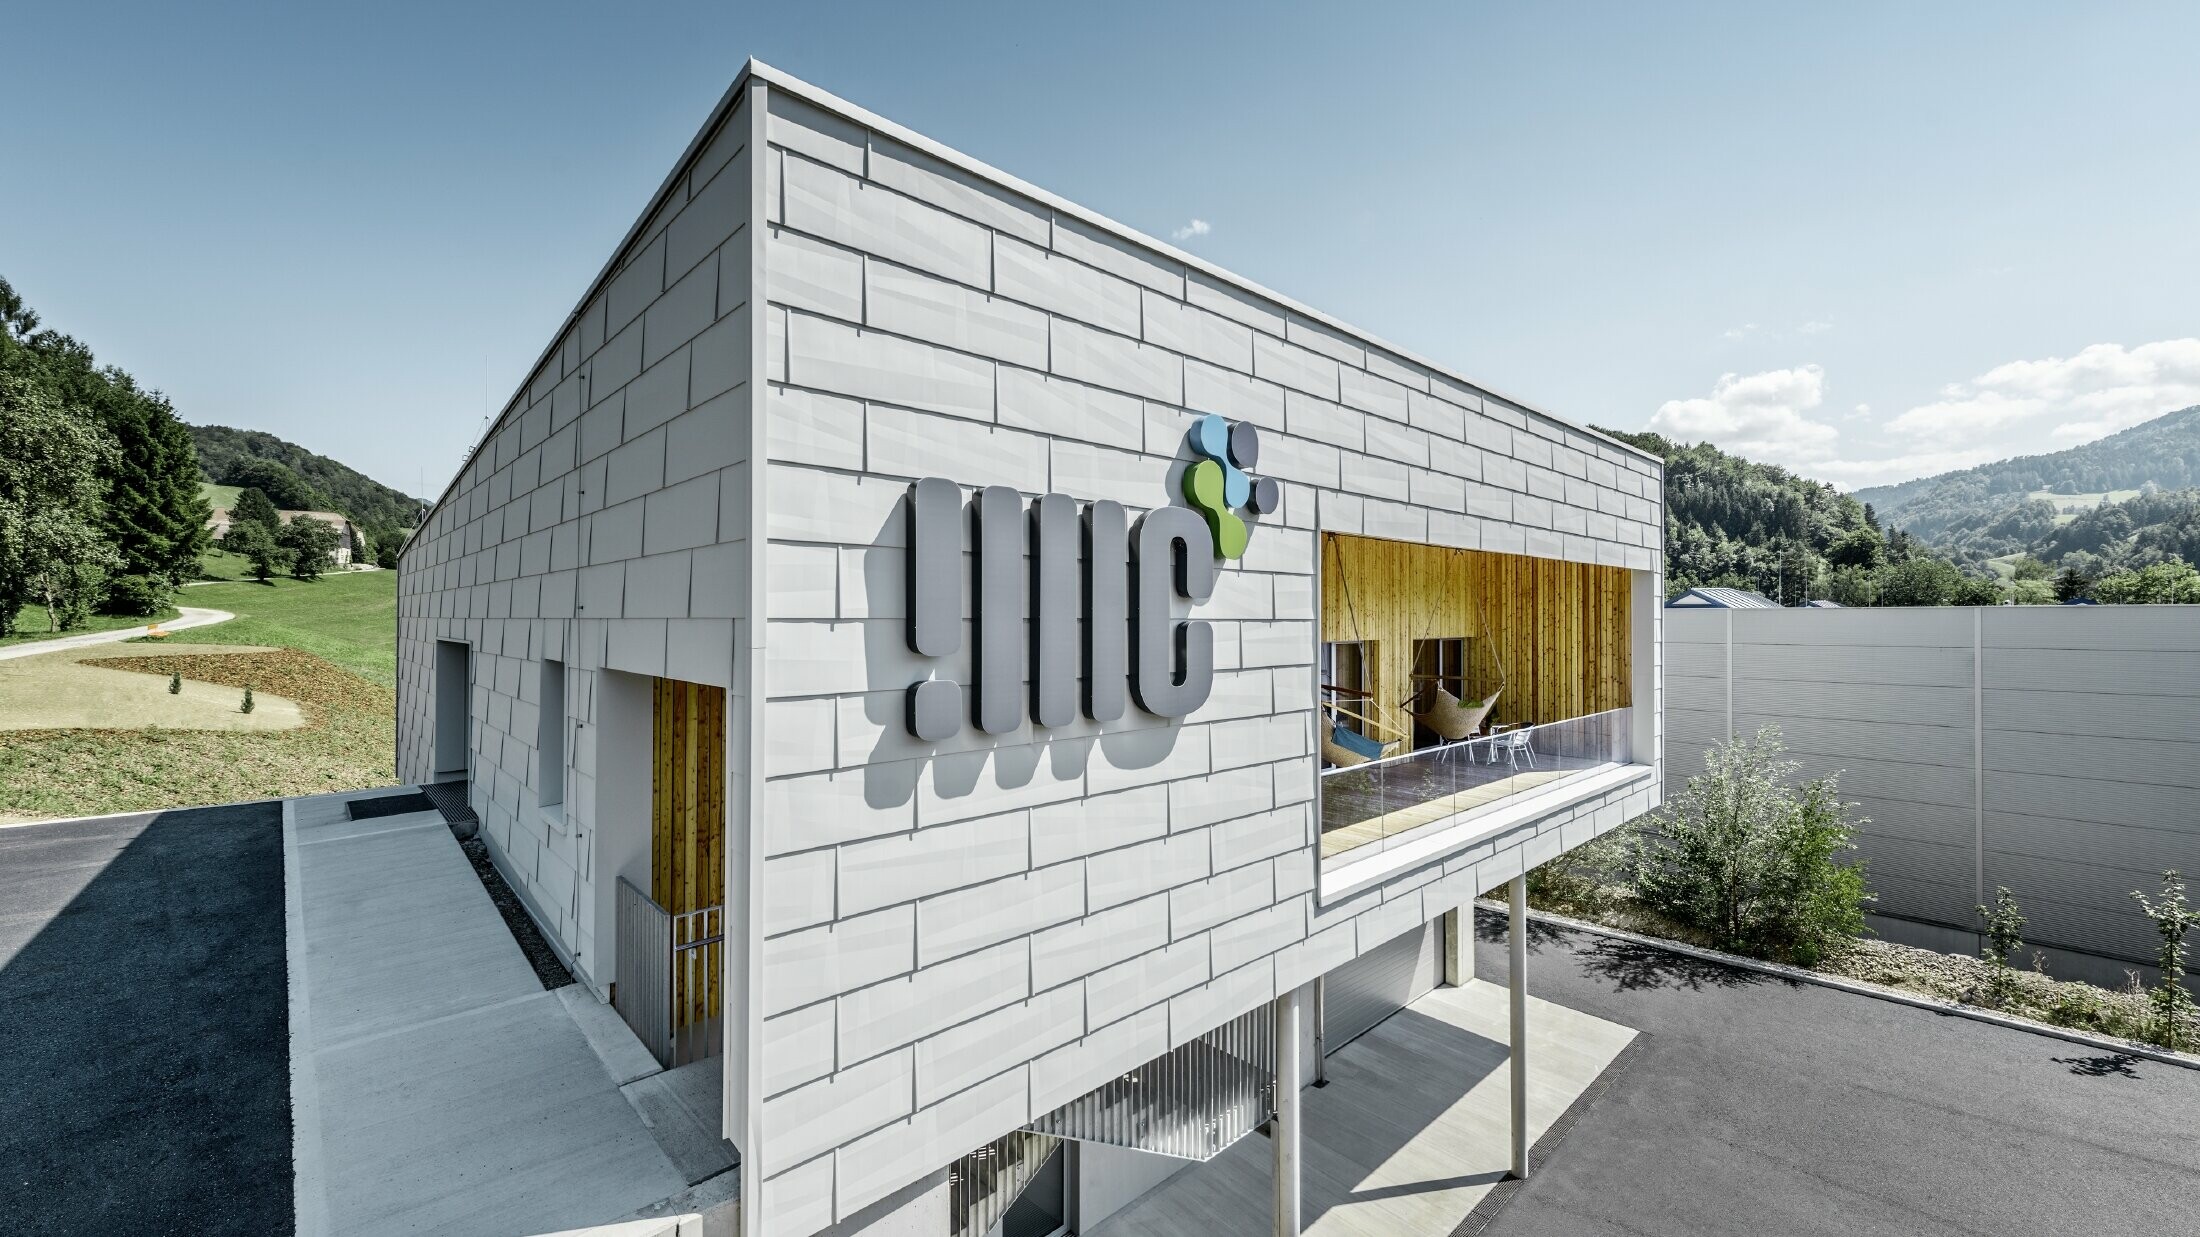 Moderno sjedište tvrtke u Ybbsitzu s ravnim krovom i aluminijskom fasadom; Fasada je obložena PREFA fasadnim panelima FX.12 u prefa bijeloj.